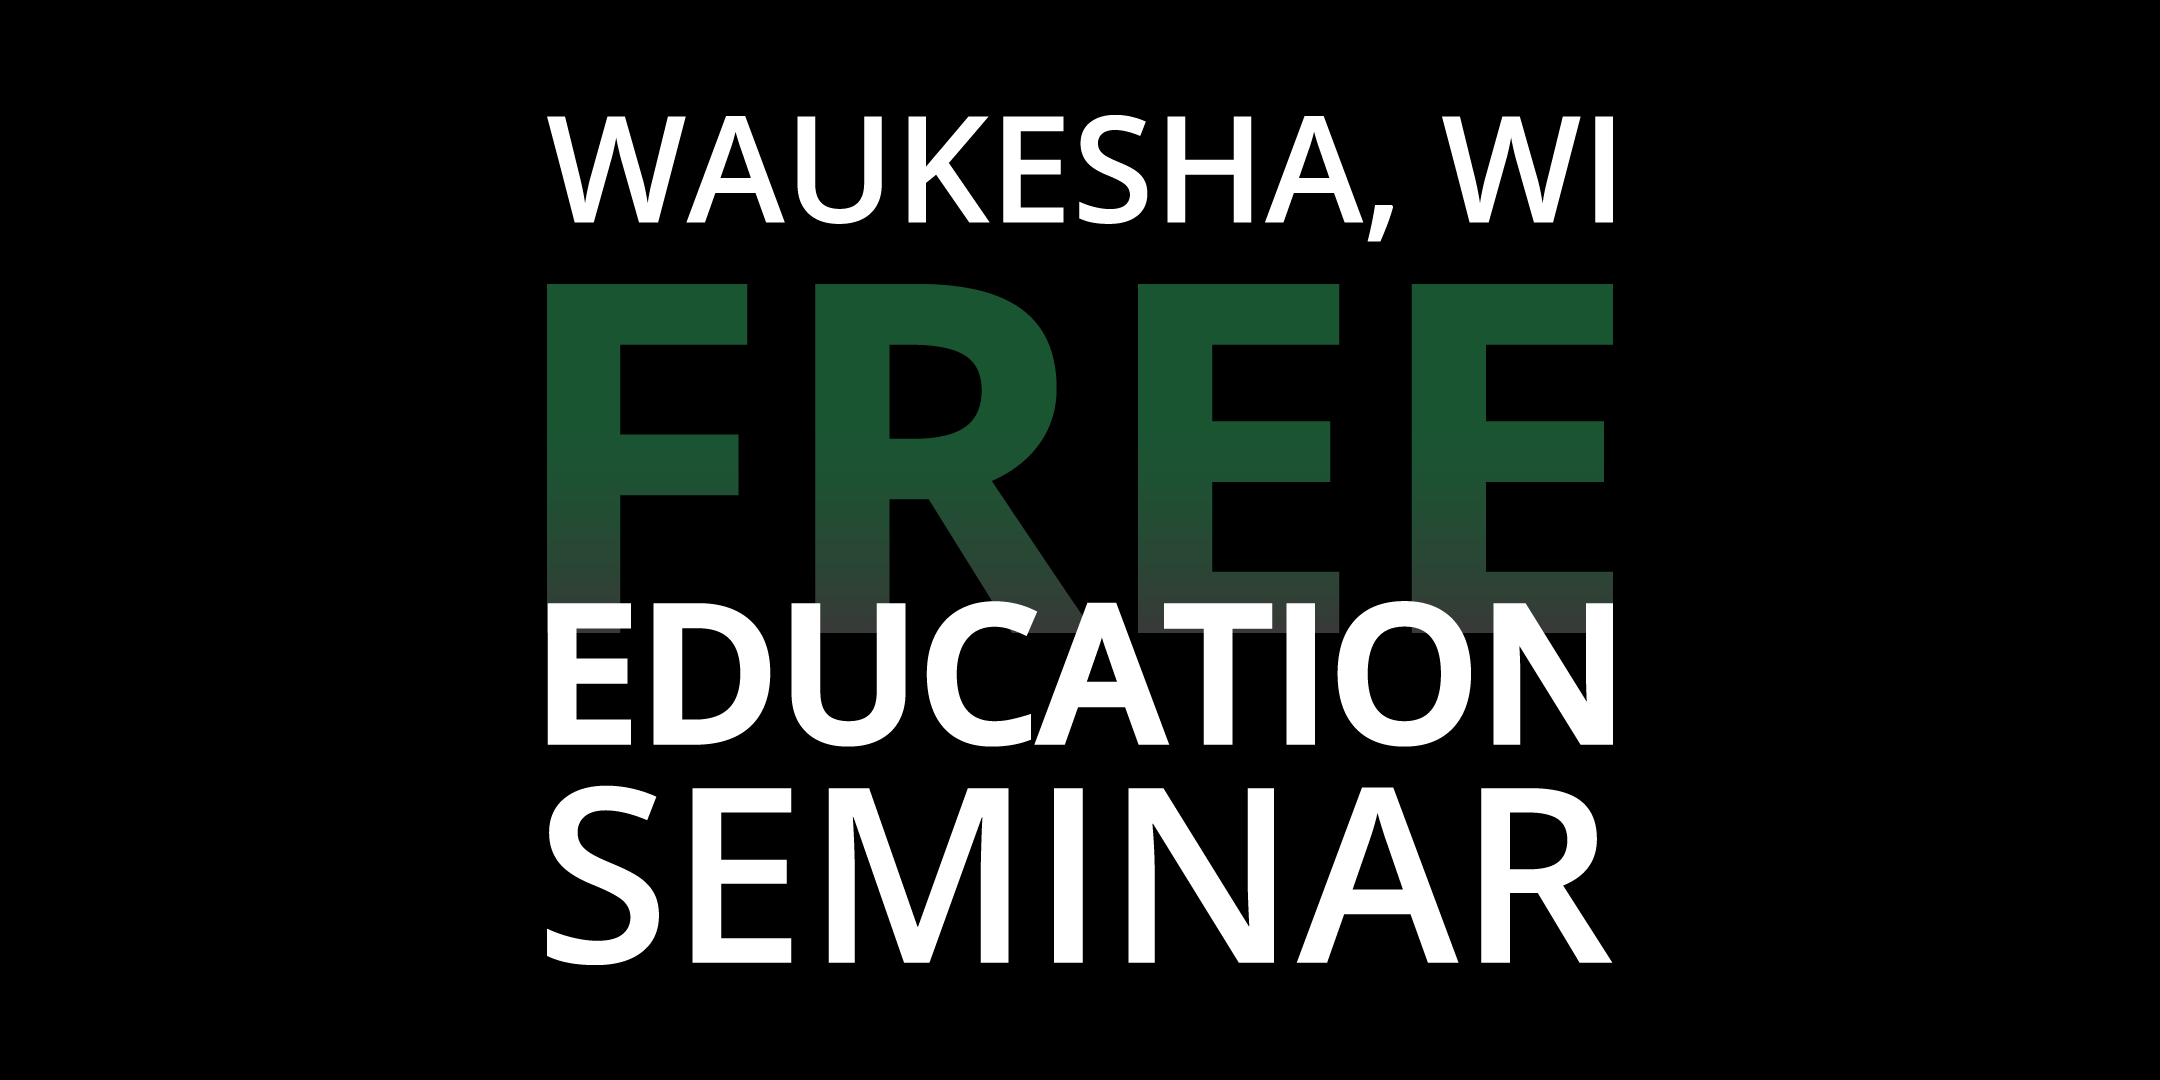 Waukesha Education Seminar